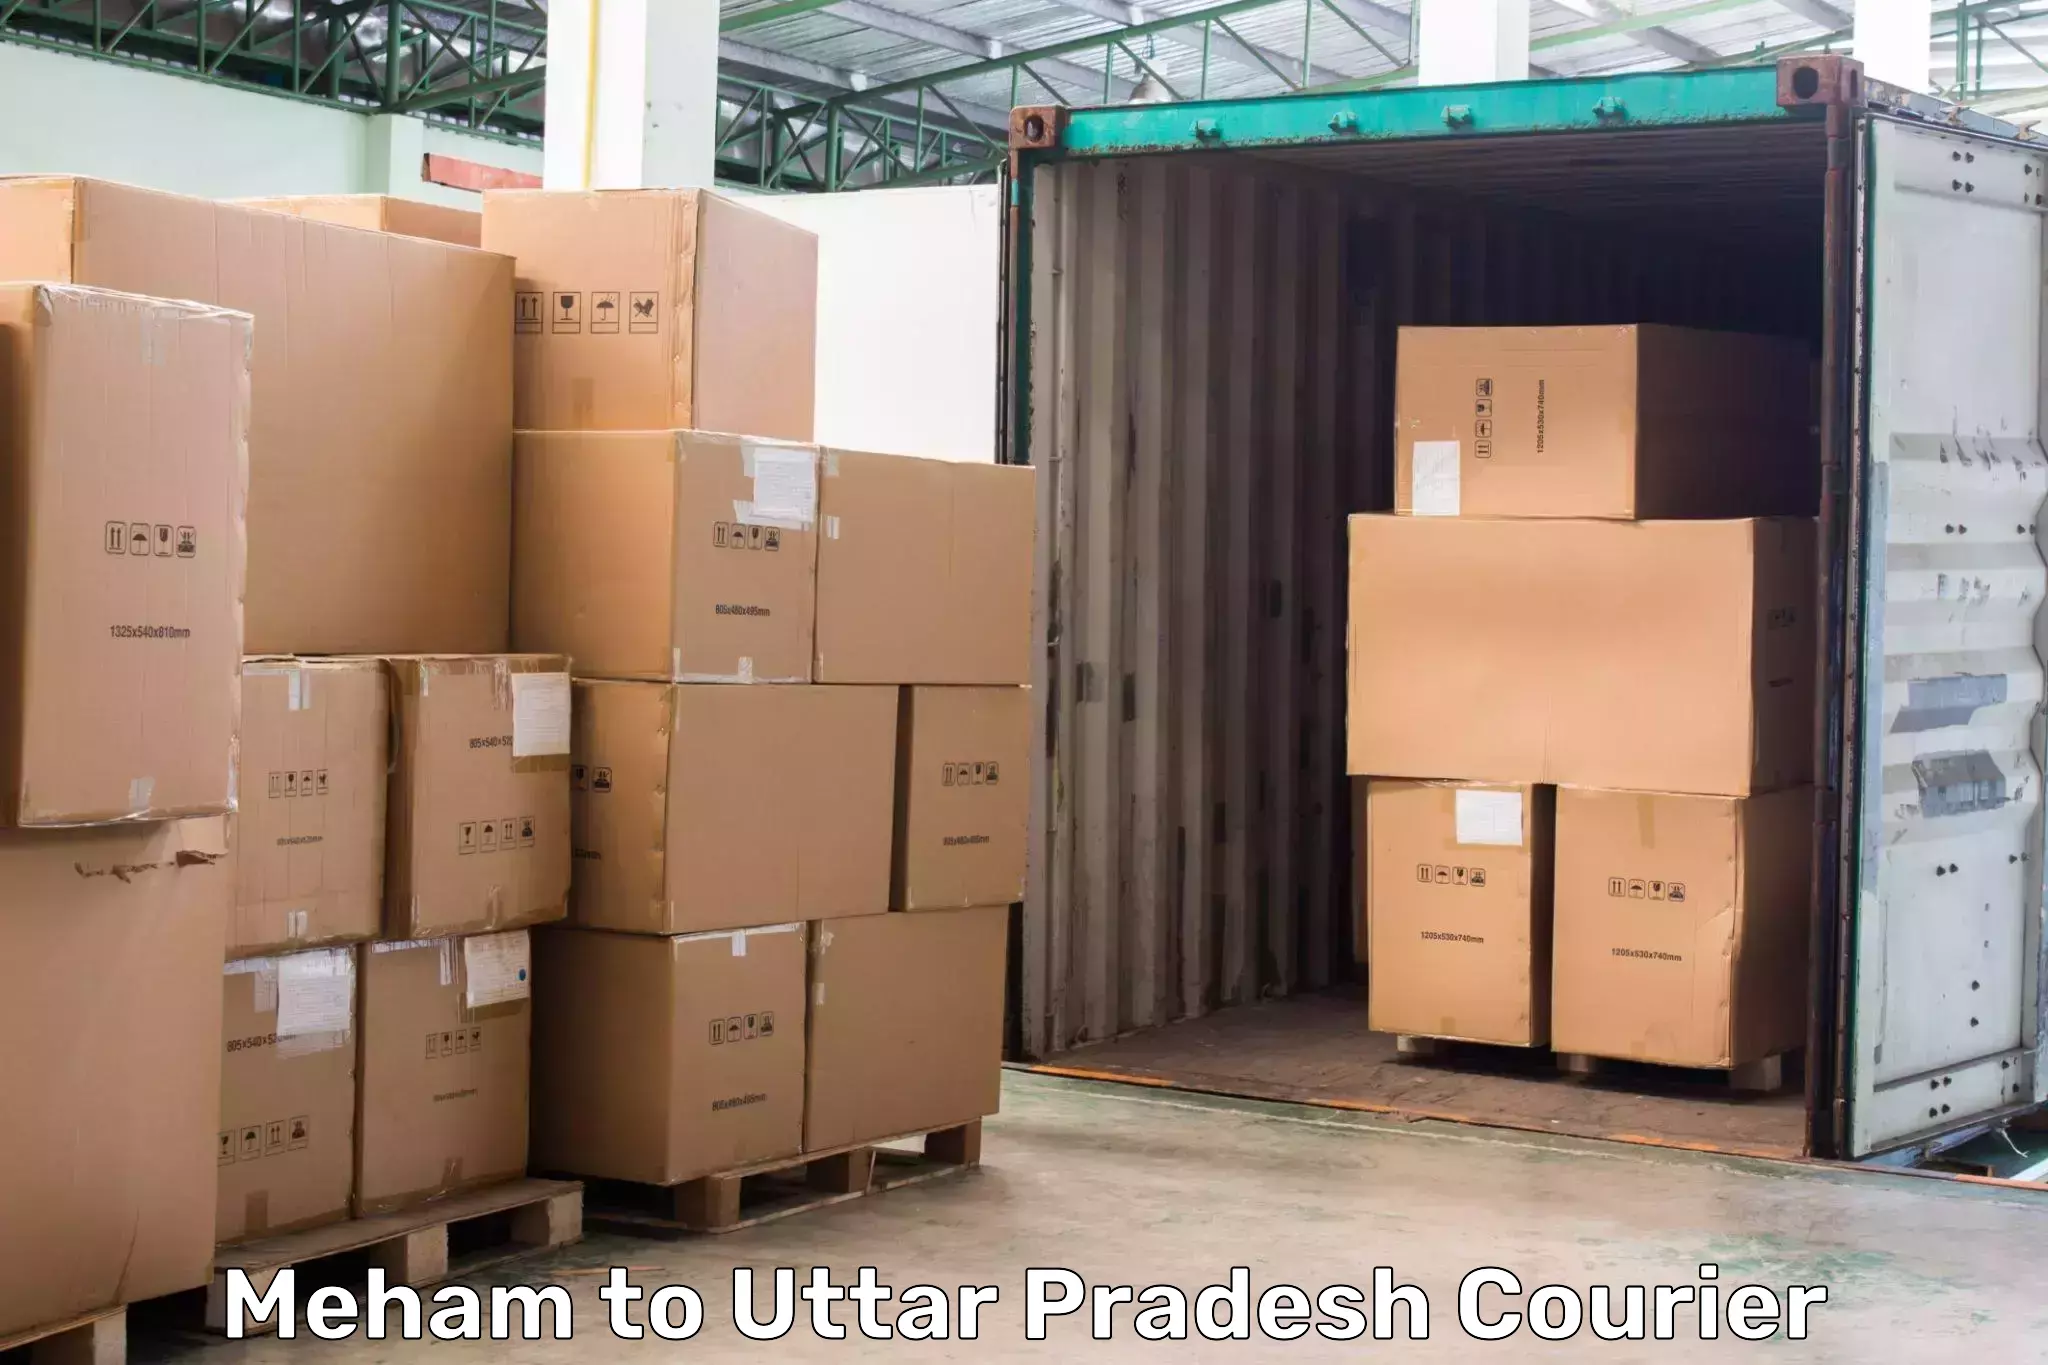 Doorstep delivery service in Meham to Sahatwar